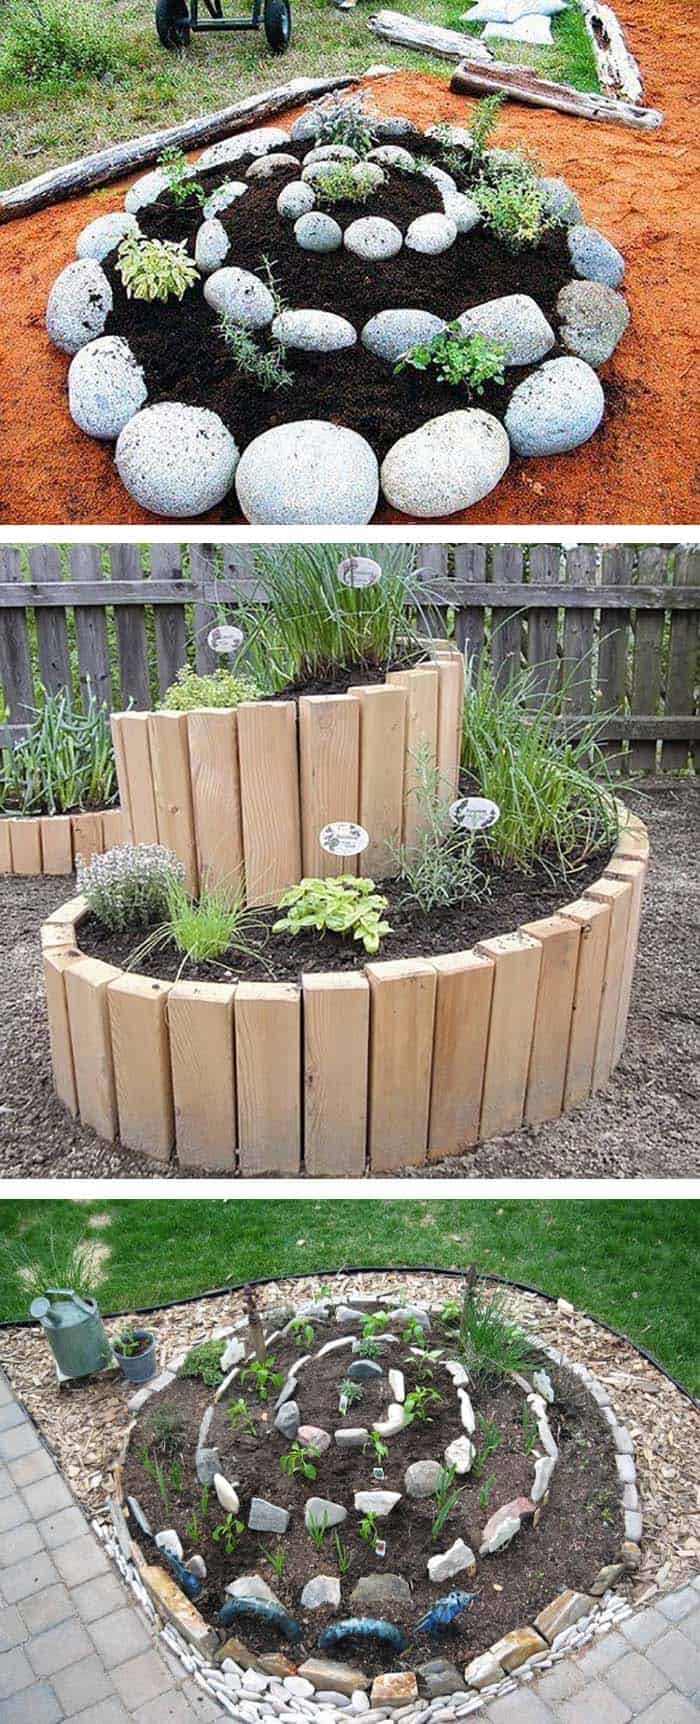 Ideas For Growing A Vegetable Garden